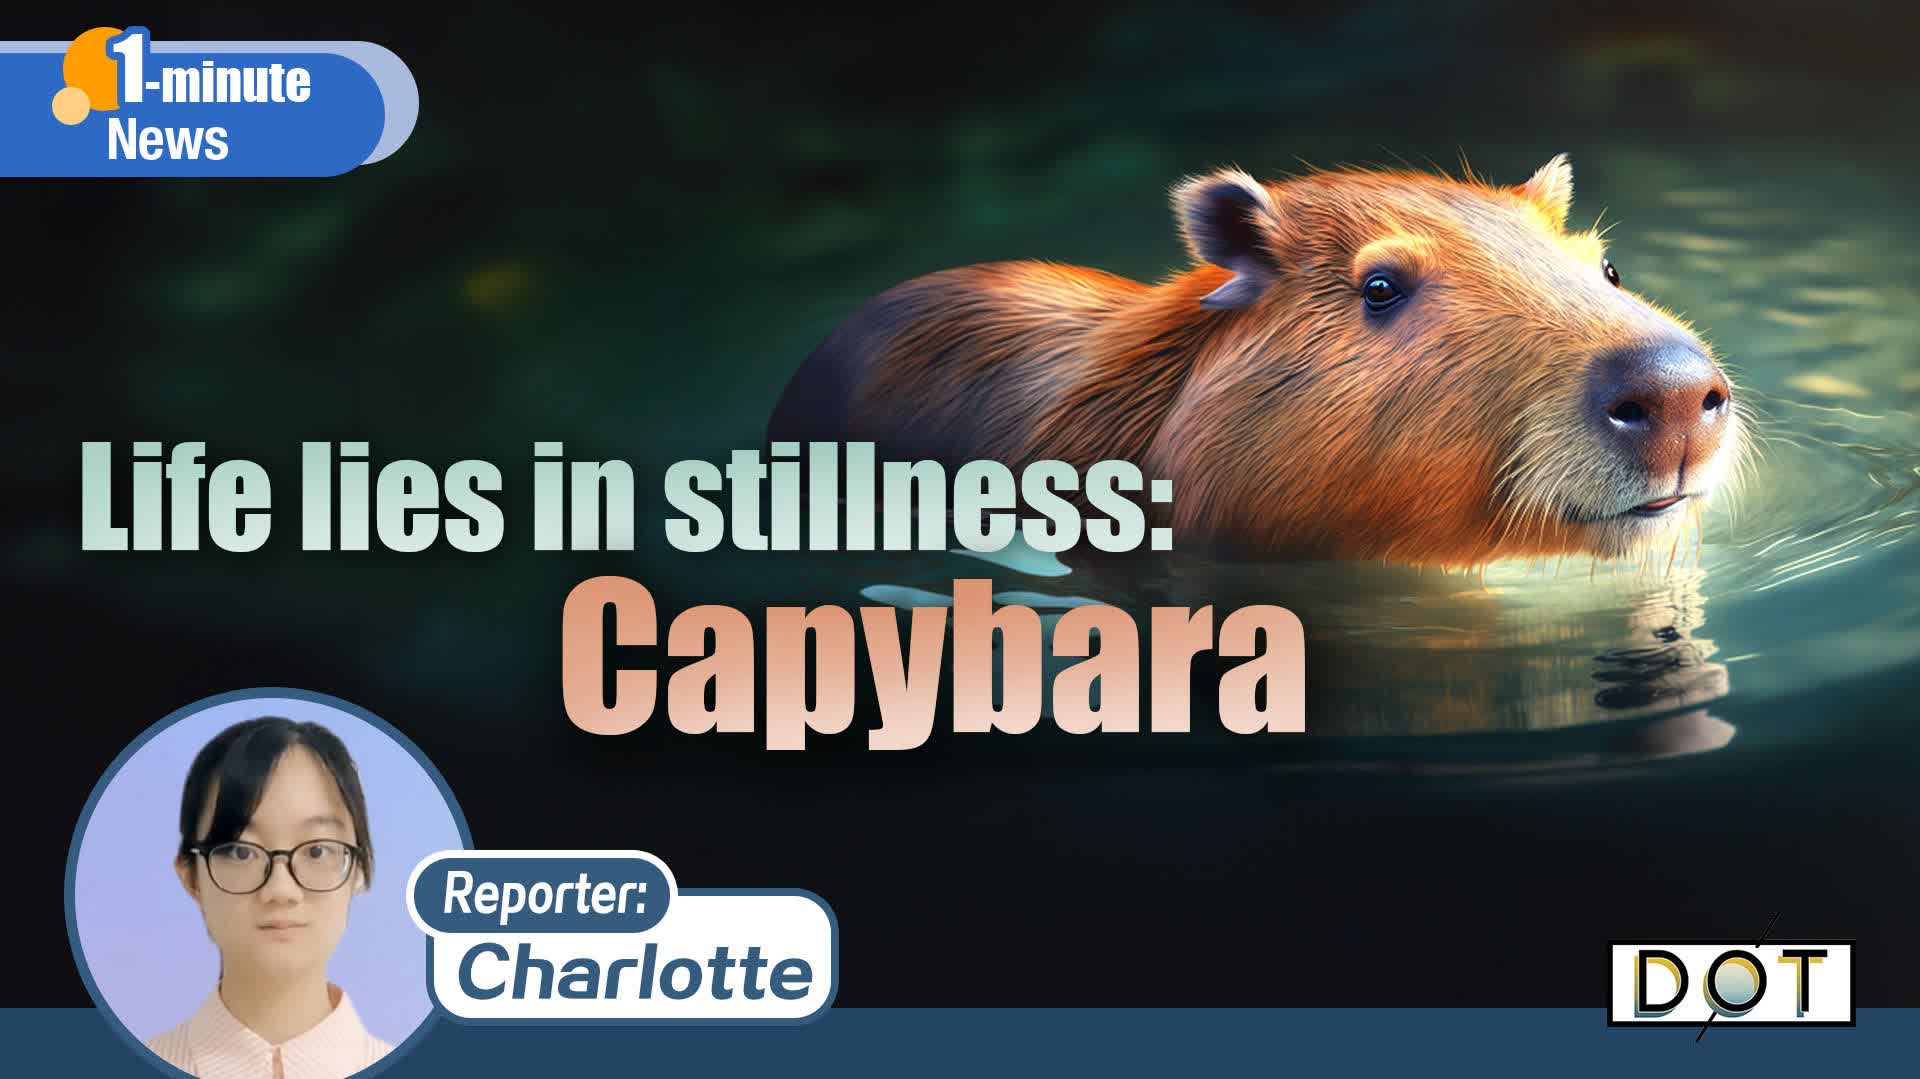 1-minute News | Life lies in stillness: Capybara